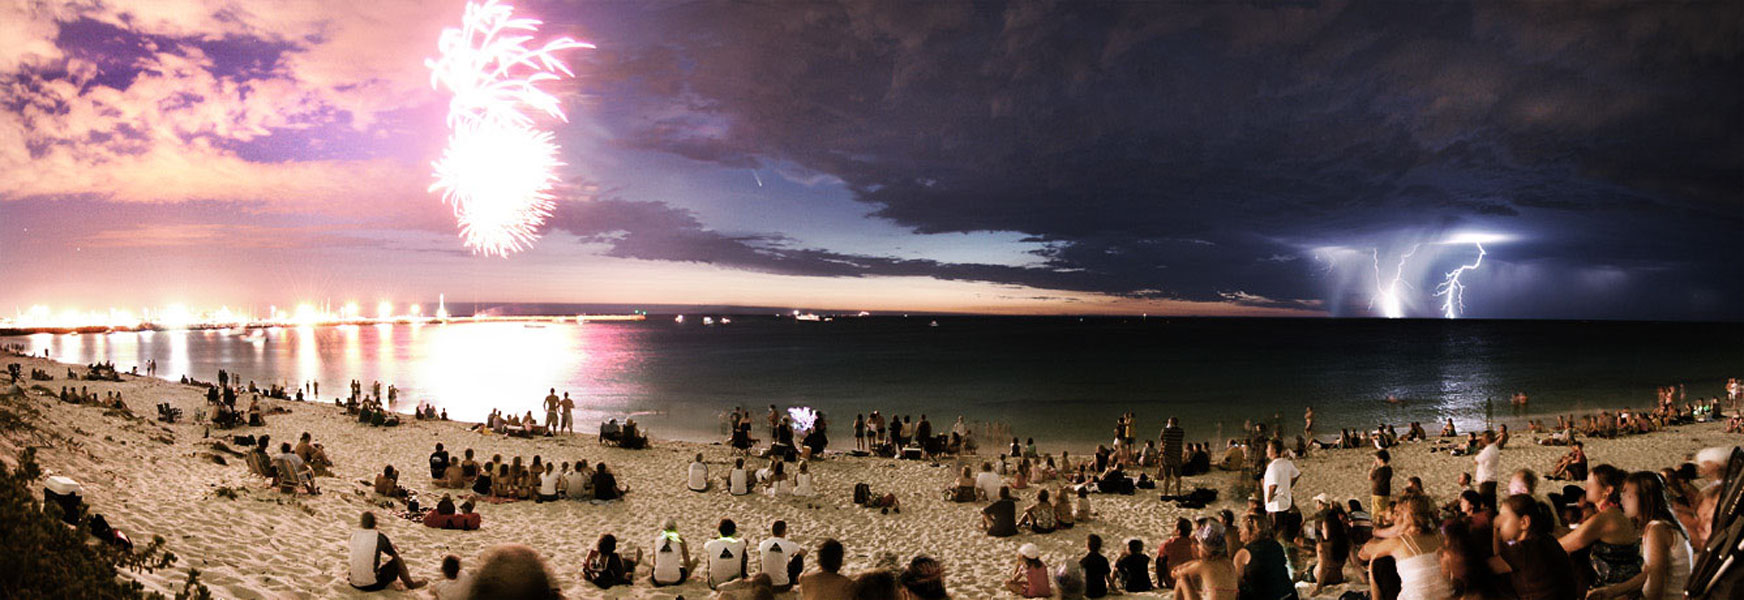 1744x600, 218 Kb / австралия, панорама, молния, комета, фейерверк